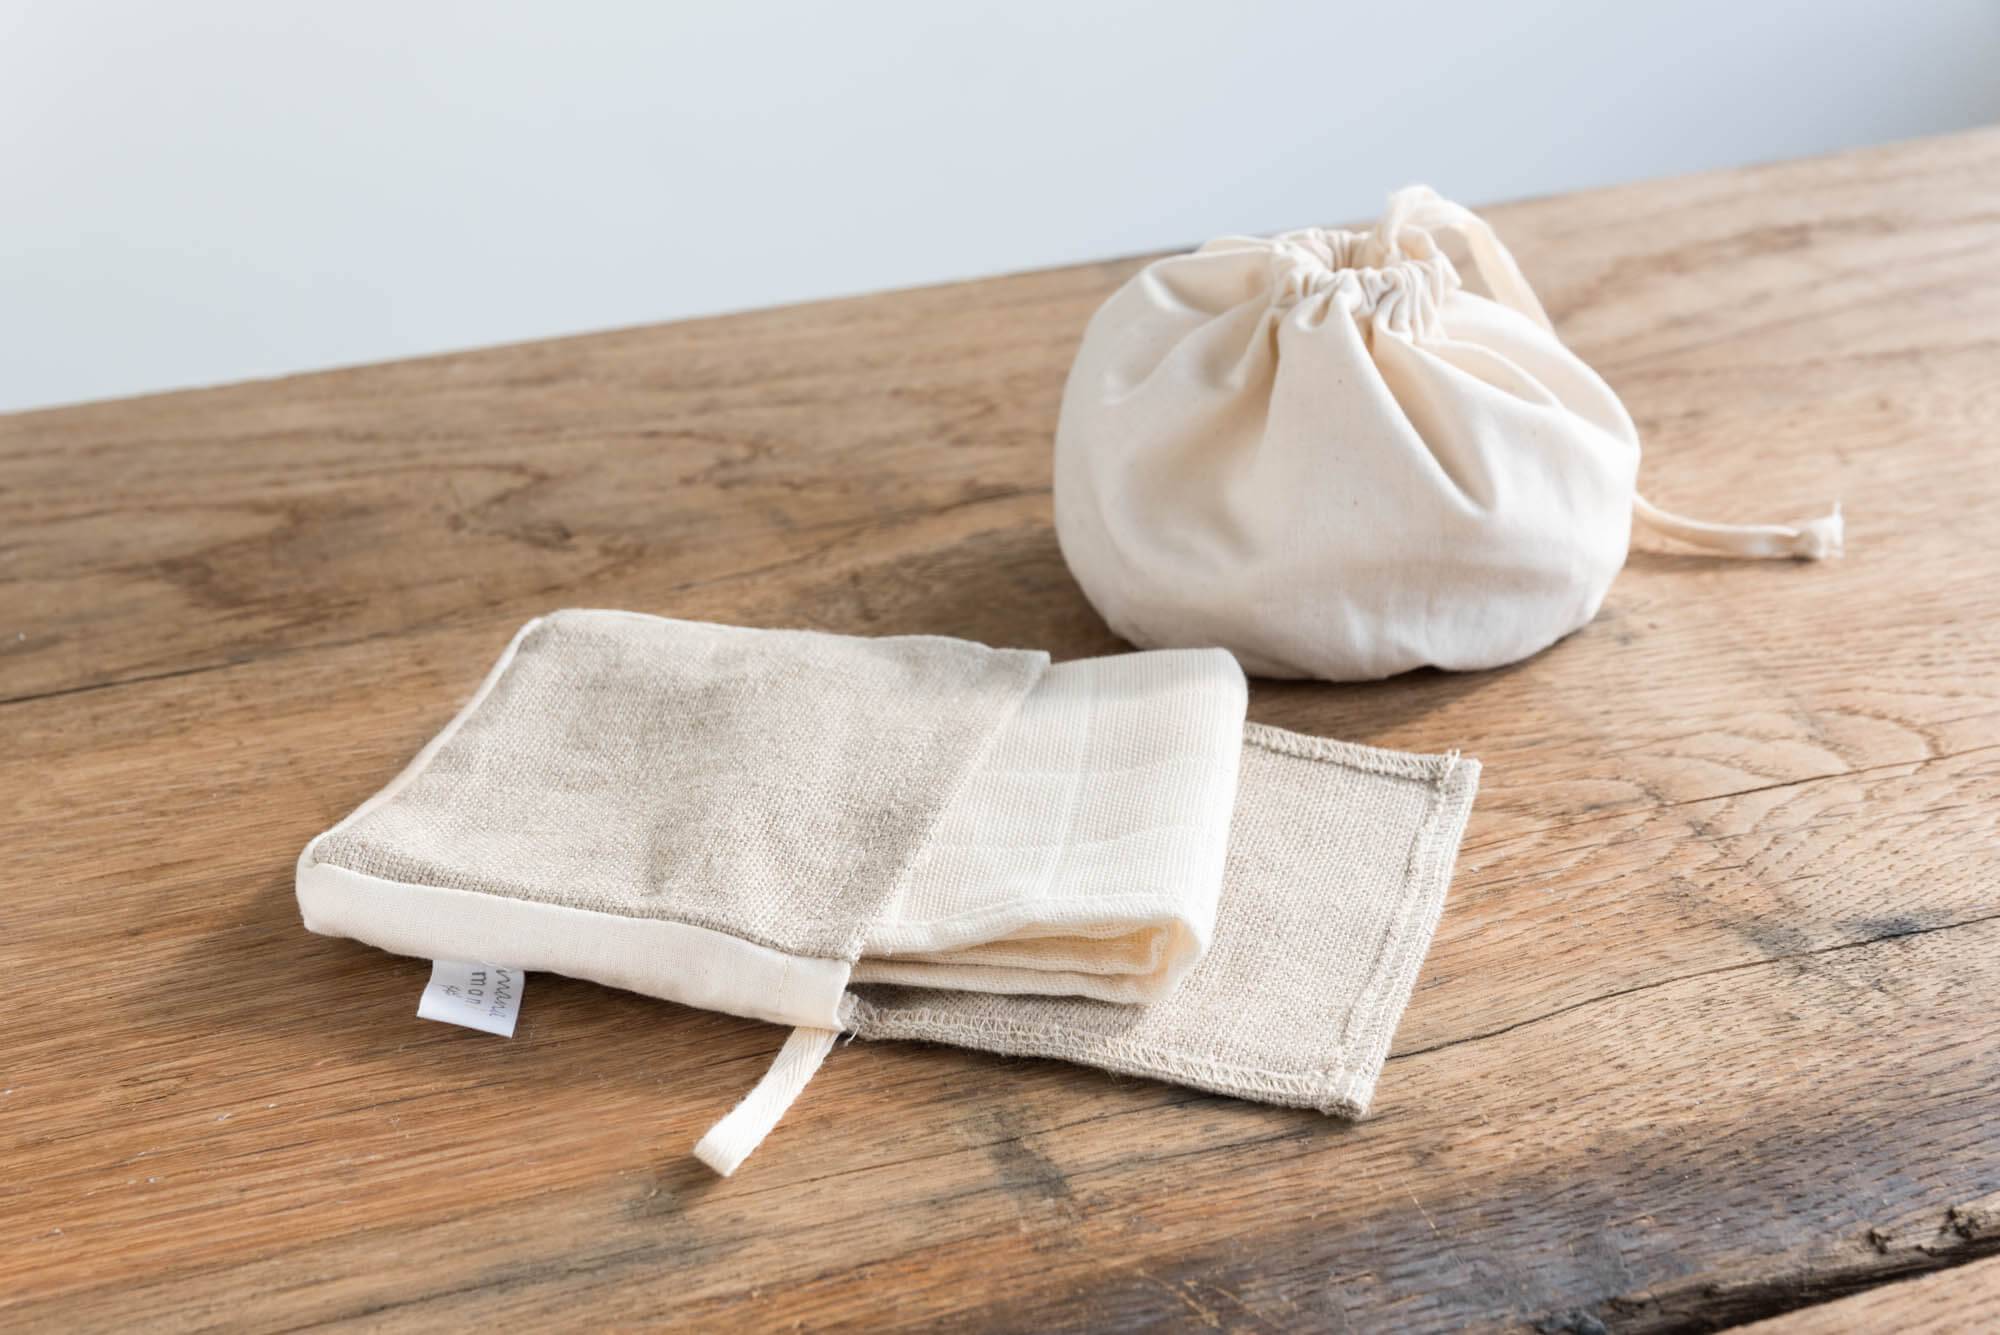 Kit mouchoirs en tissu avec son pochon - coloris blanc.